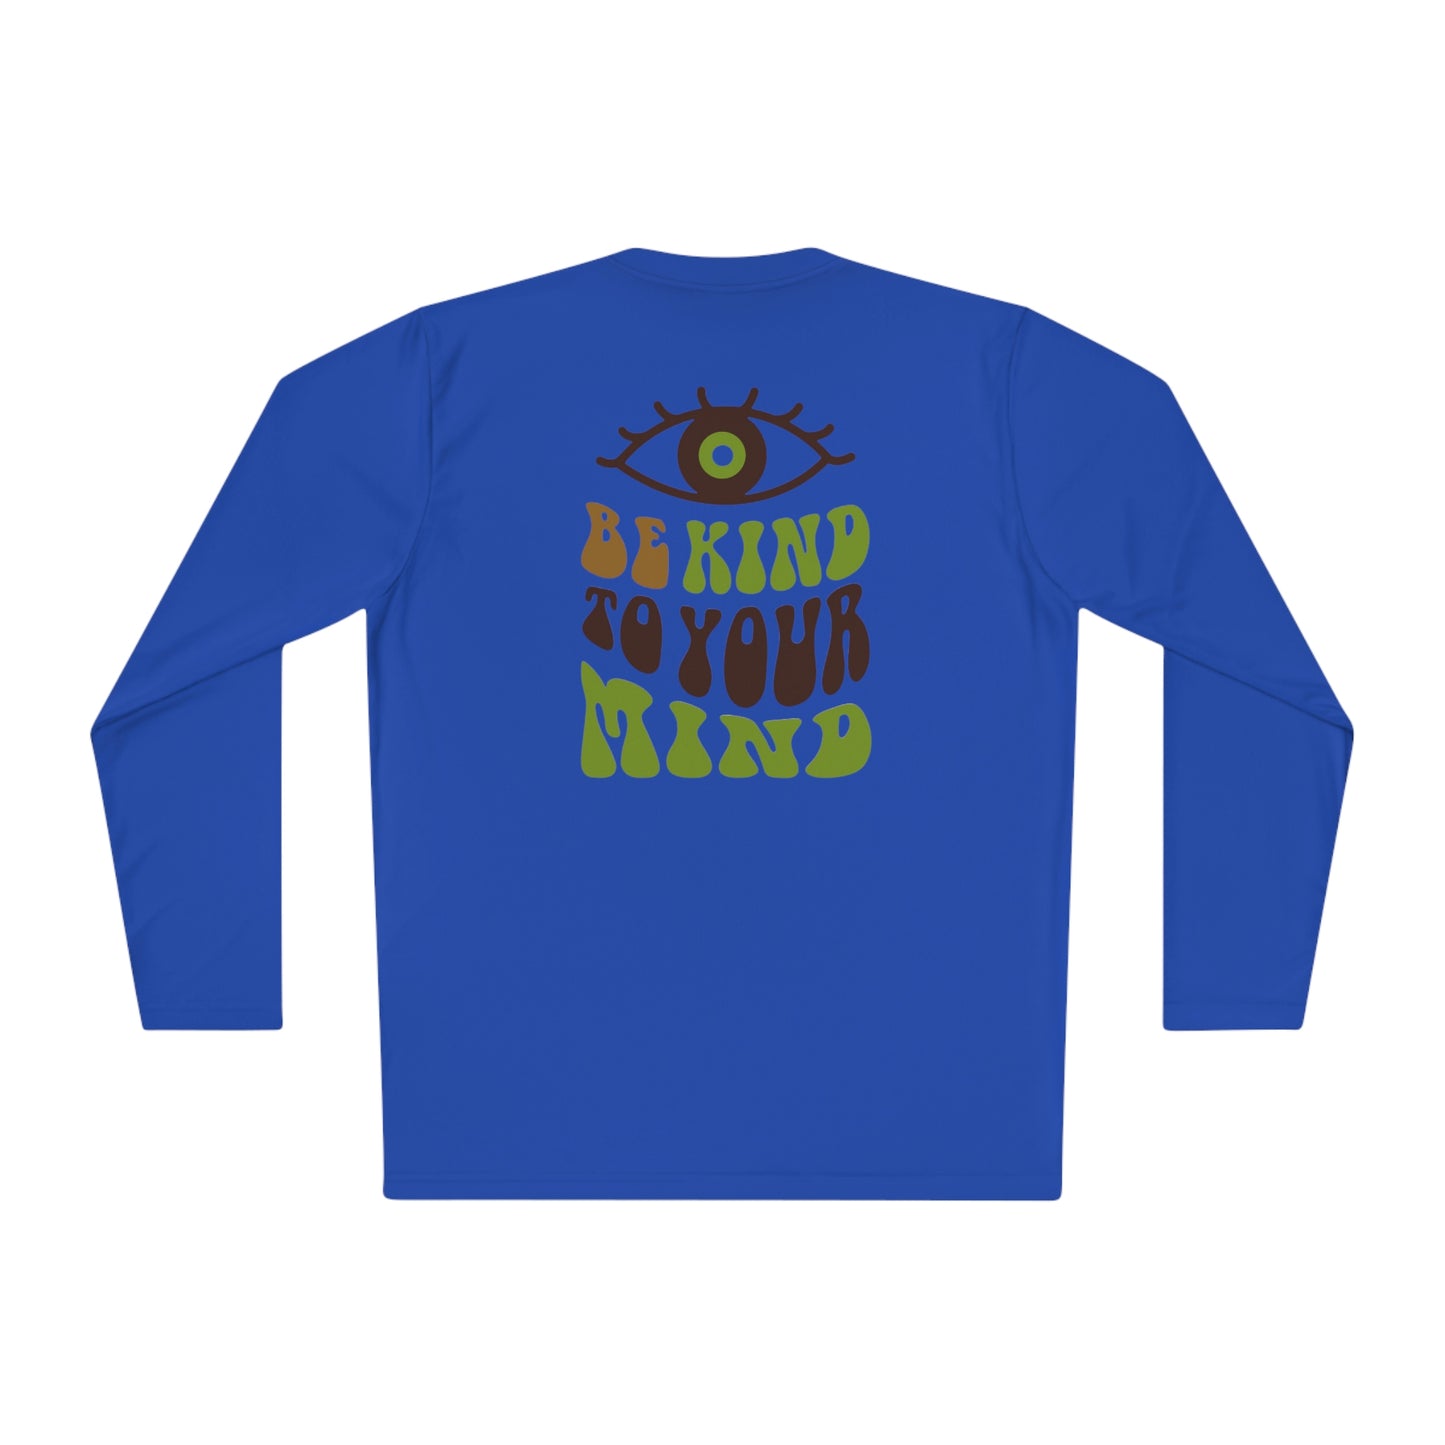 Camiseta de manga larga ligera unisex con estampado "Be kind to your mind" en la parte delantera y trasera